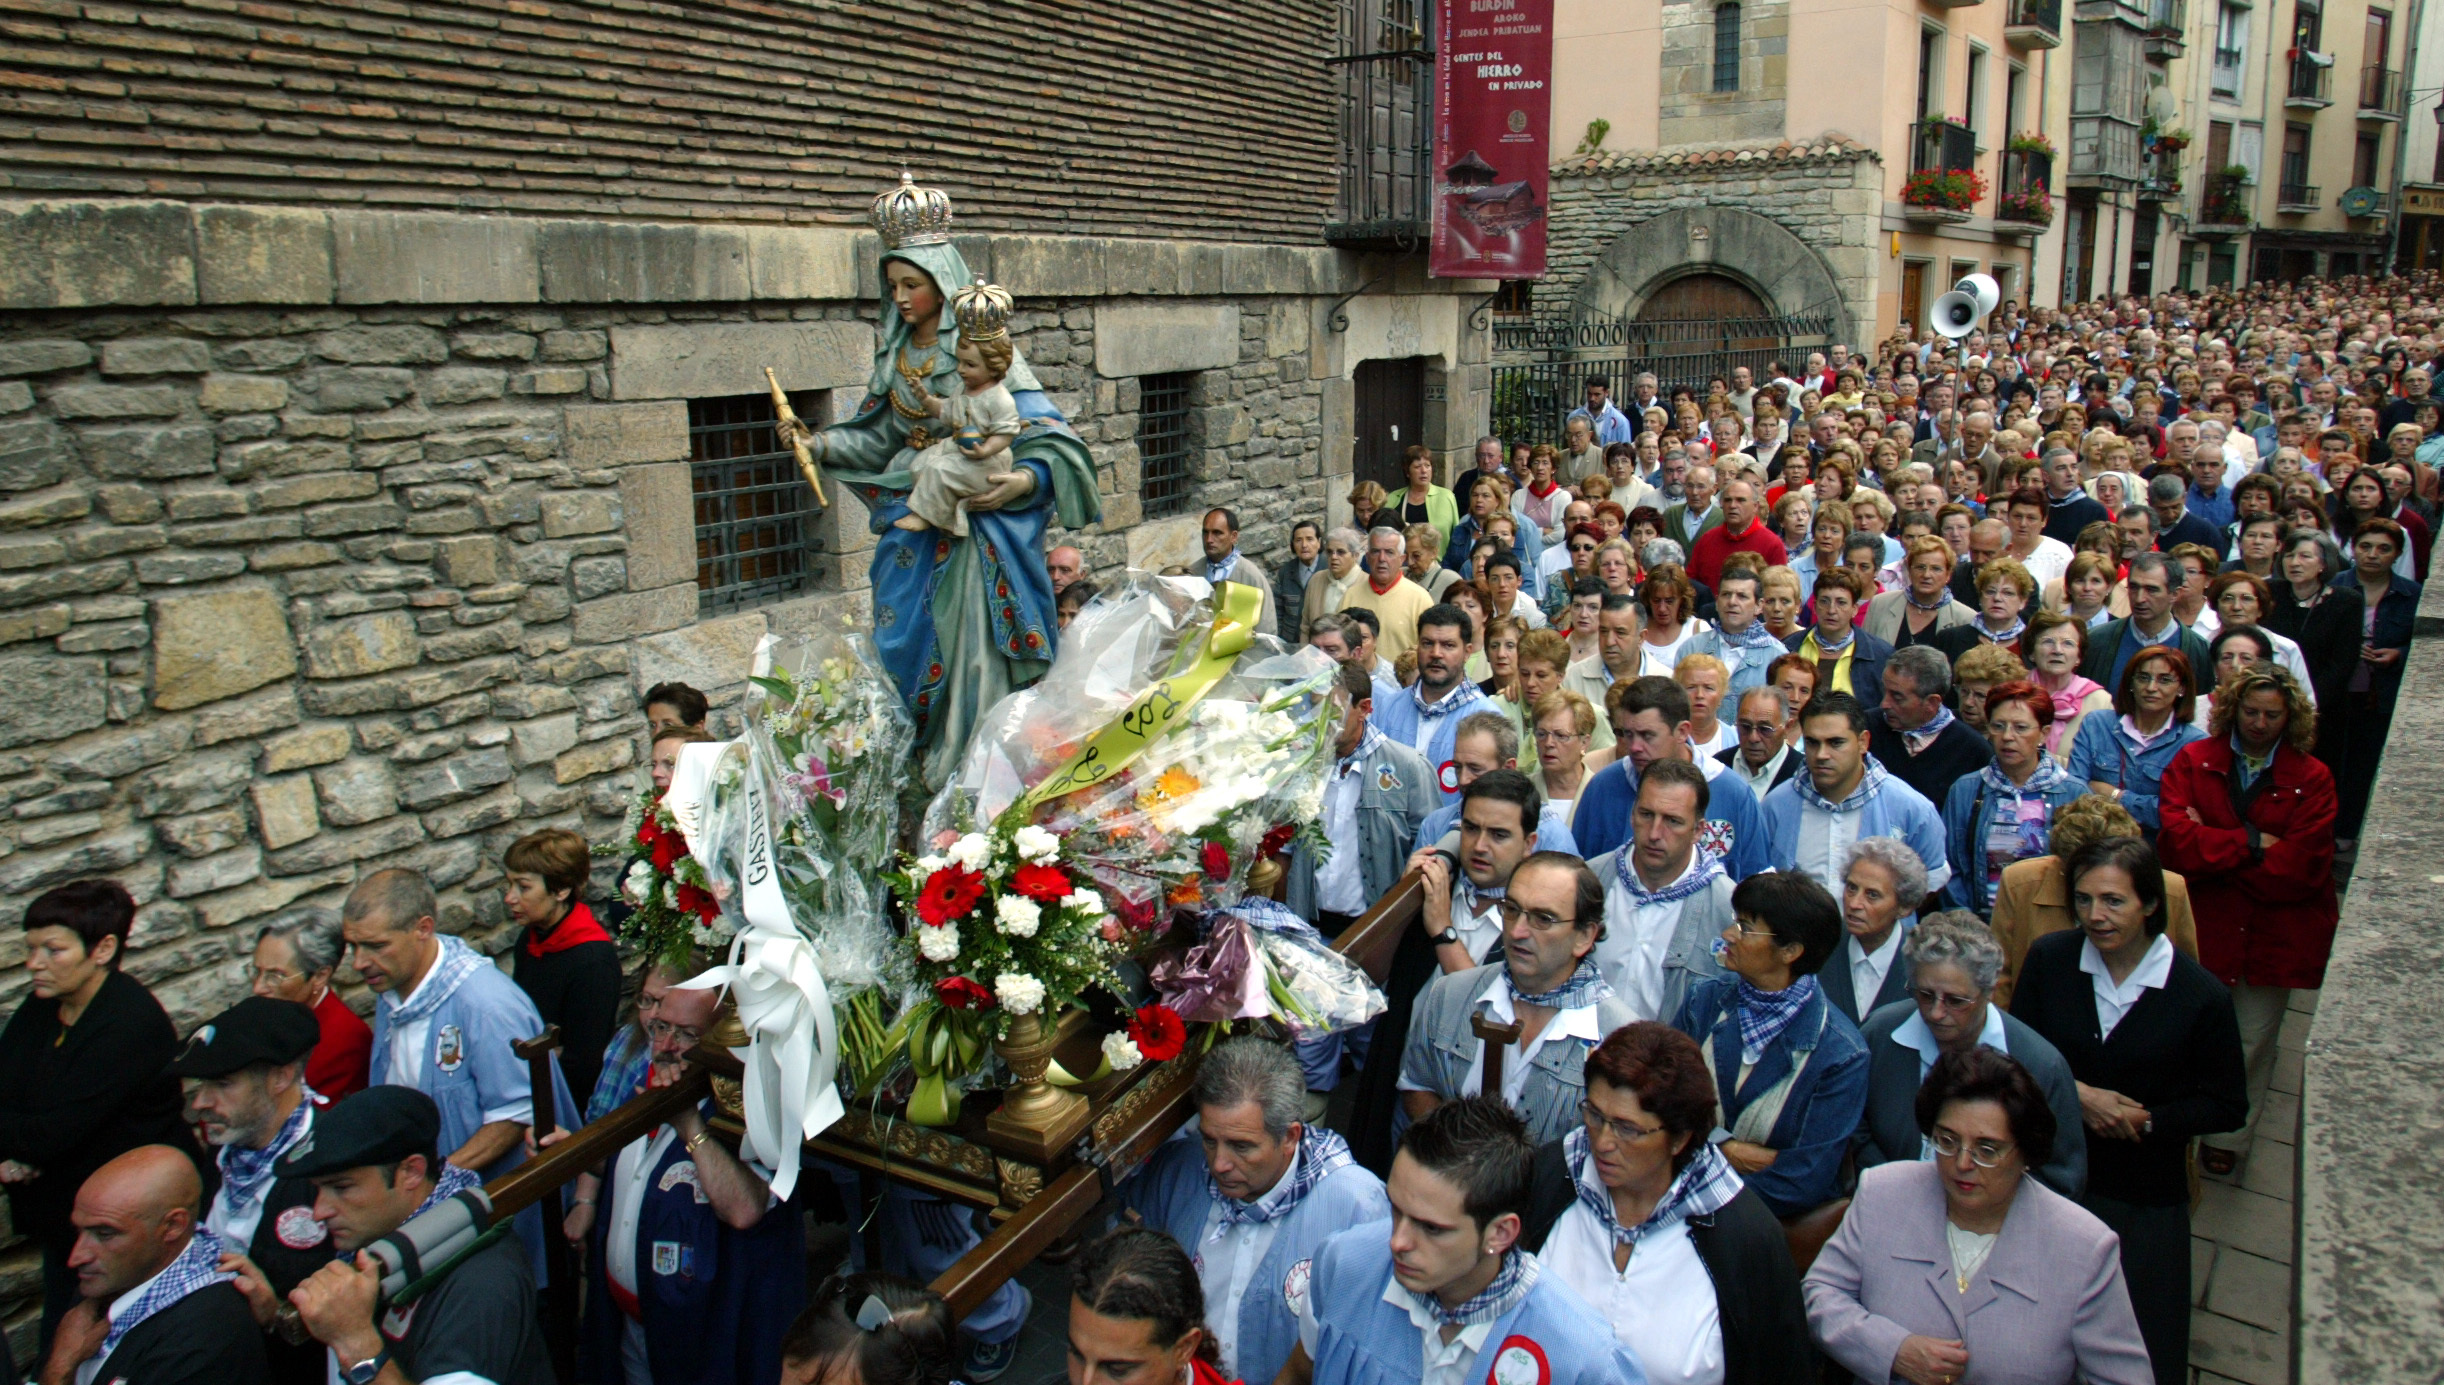 Rosario de la aurora, durante las Fiestas de la Virgen Blanca de Vitoria.